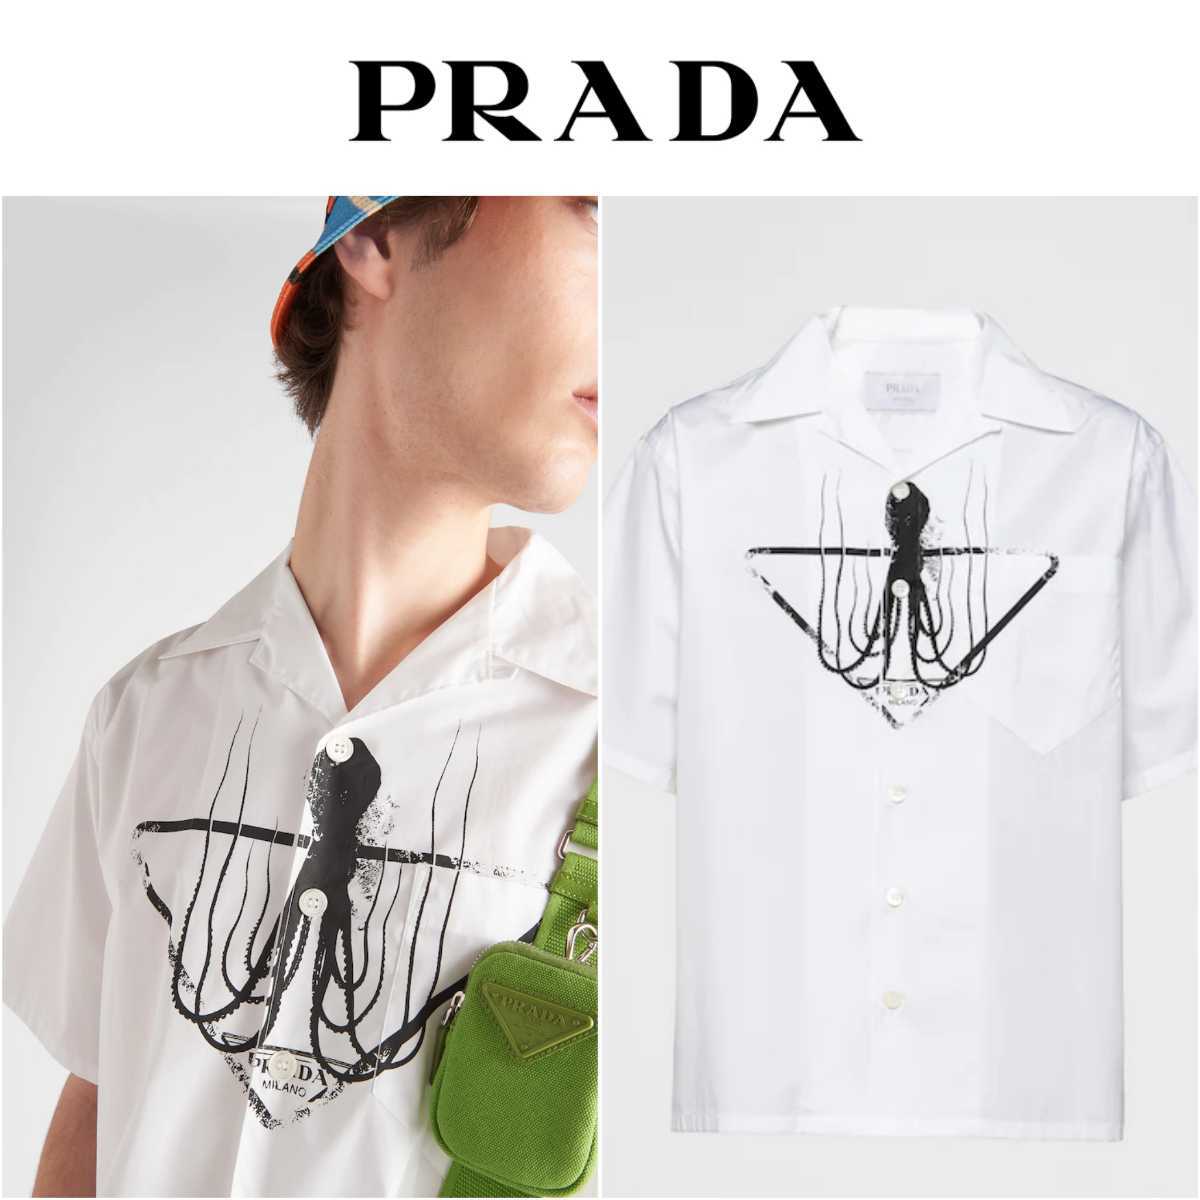 新品 定価14.6万 2022ss PRADA プラダ タトゥー ボーリングシャツ xs 半袖 ホワイト マーメイド ロゴ ニット tシャツ 白  バッグ ナイロン